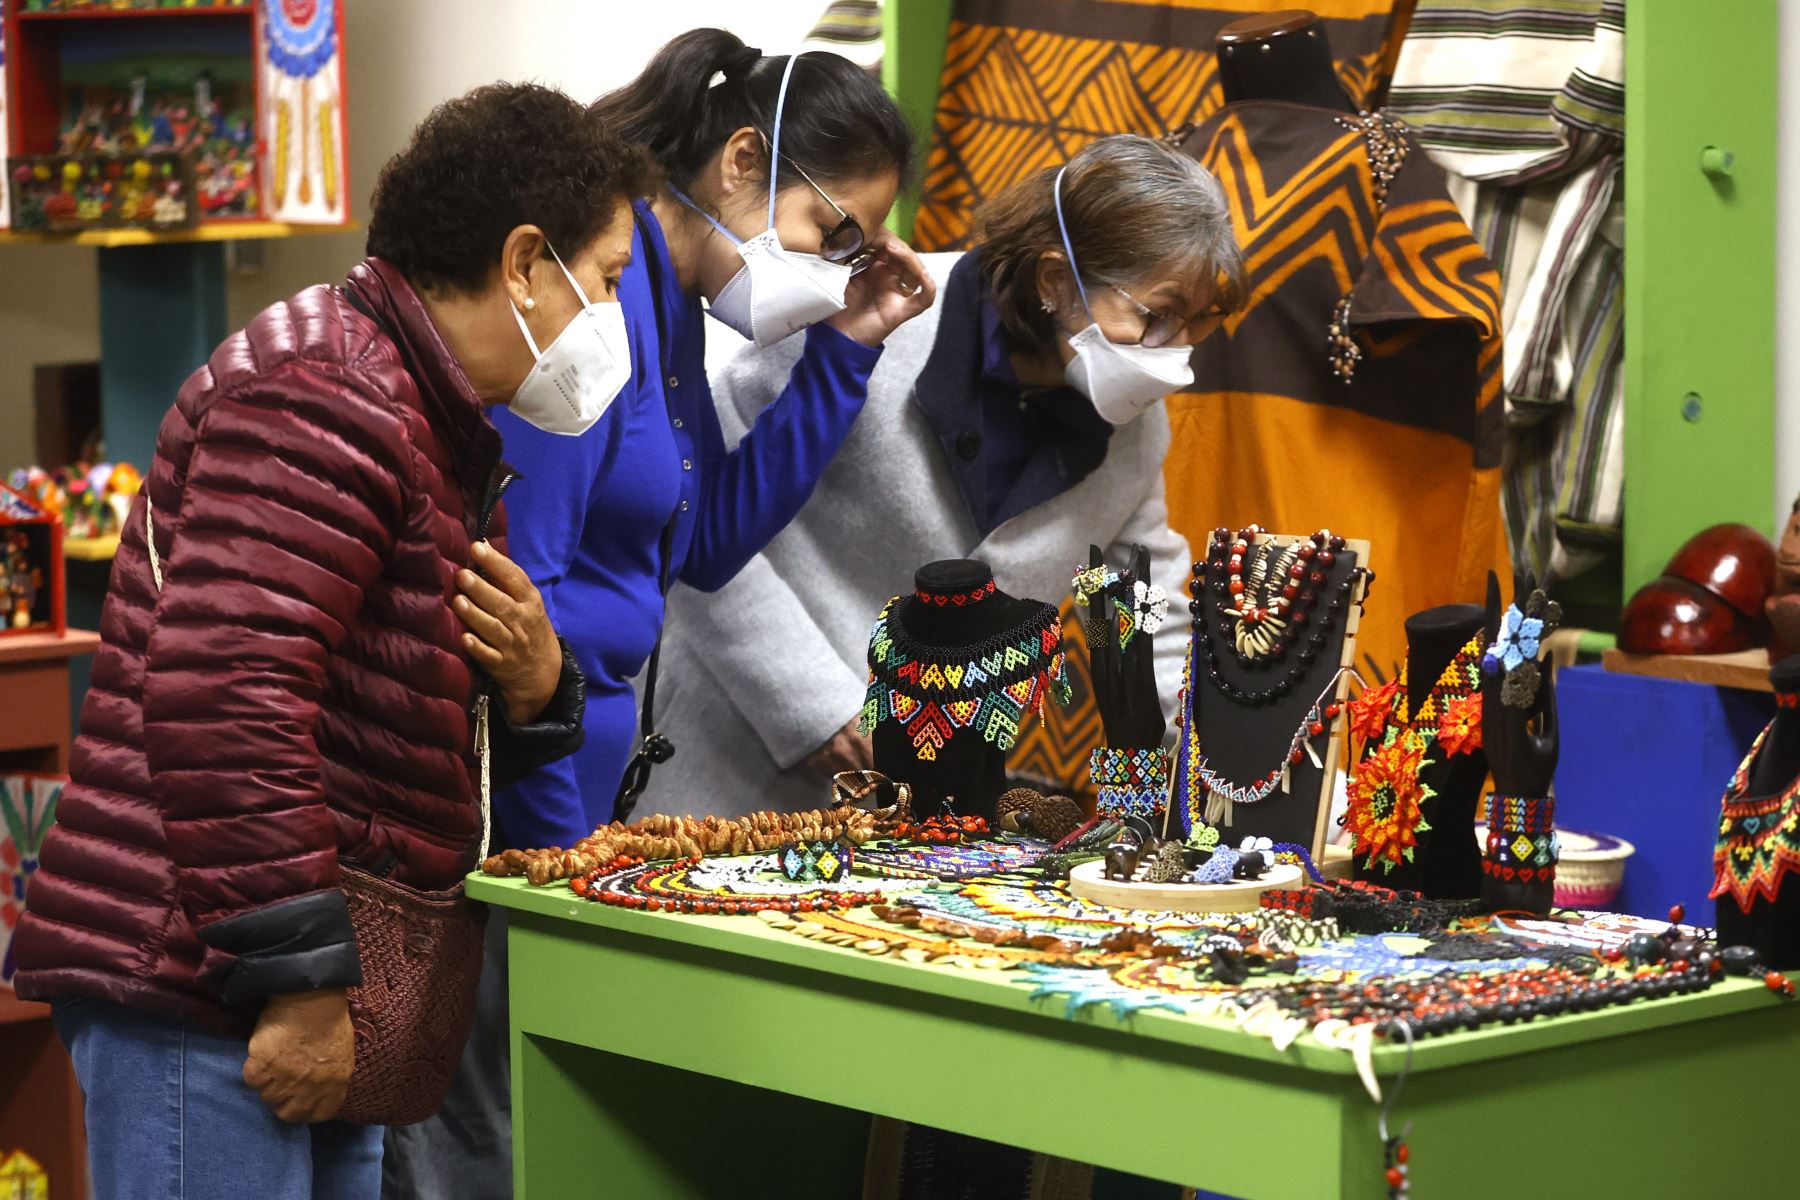 La feria artesanal más importante del país se inauguró hoy en el Ministerio de Cultura. Ruraq Maki, hecho a mano. Nuestra cultura es el mejor regalo, una actividad que convoca a artistas tradicionales de todas las regiones del Perú. Foto: ANDINA/Vidal Tarqui